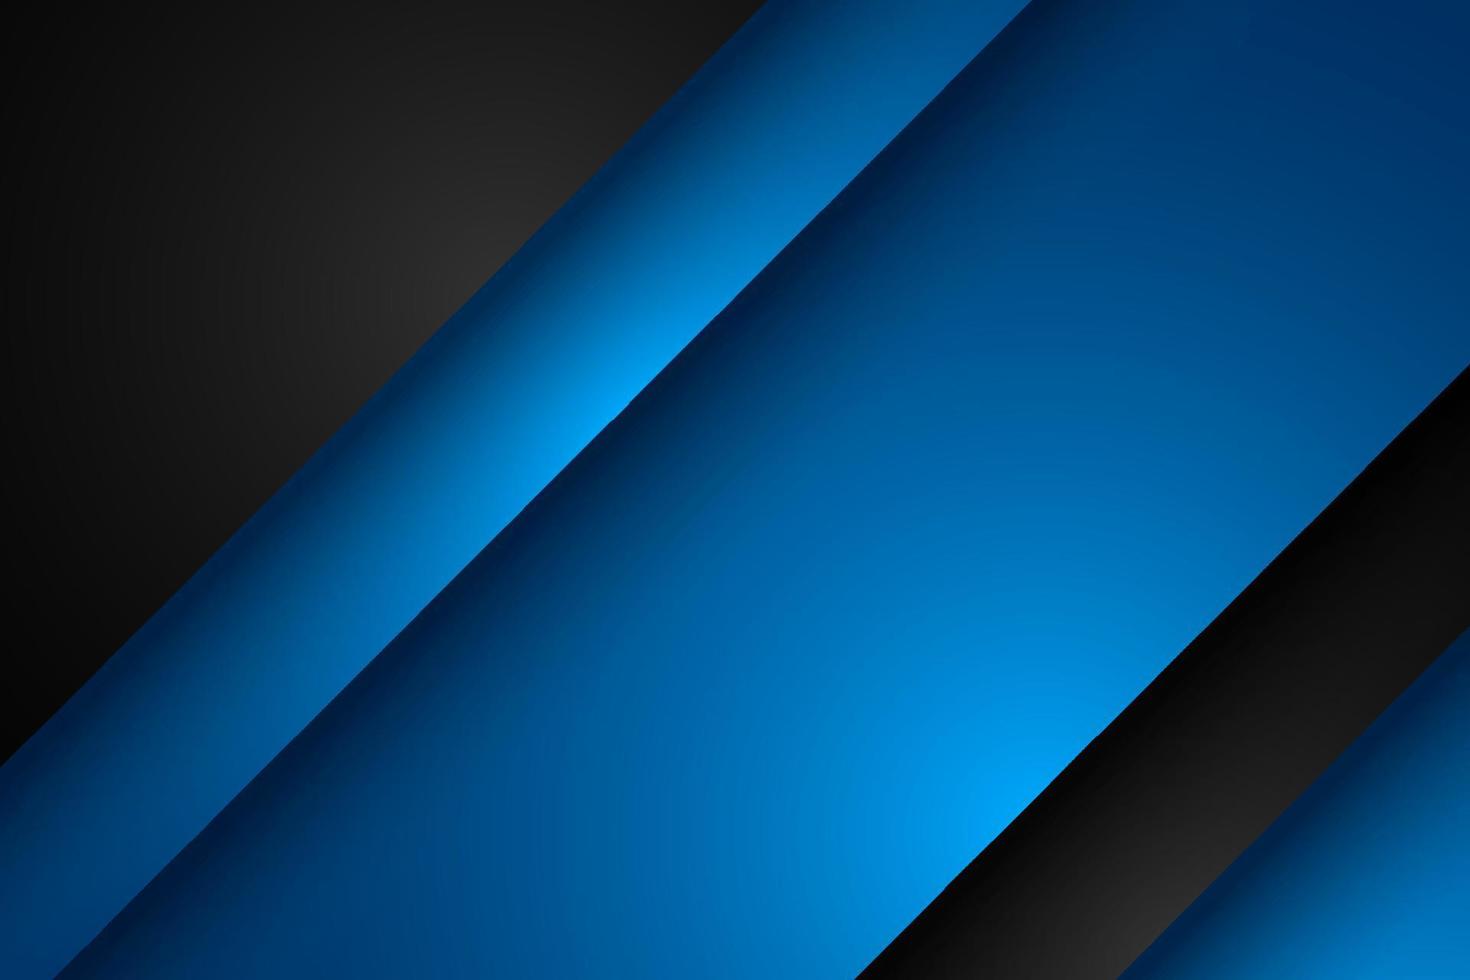 abstrakt blå och svart diagonal överlappningsbakgrund vektor